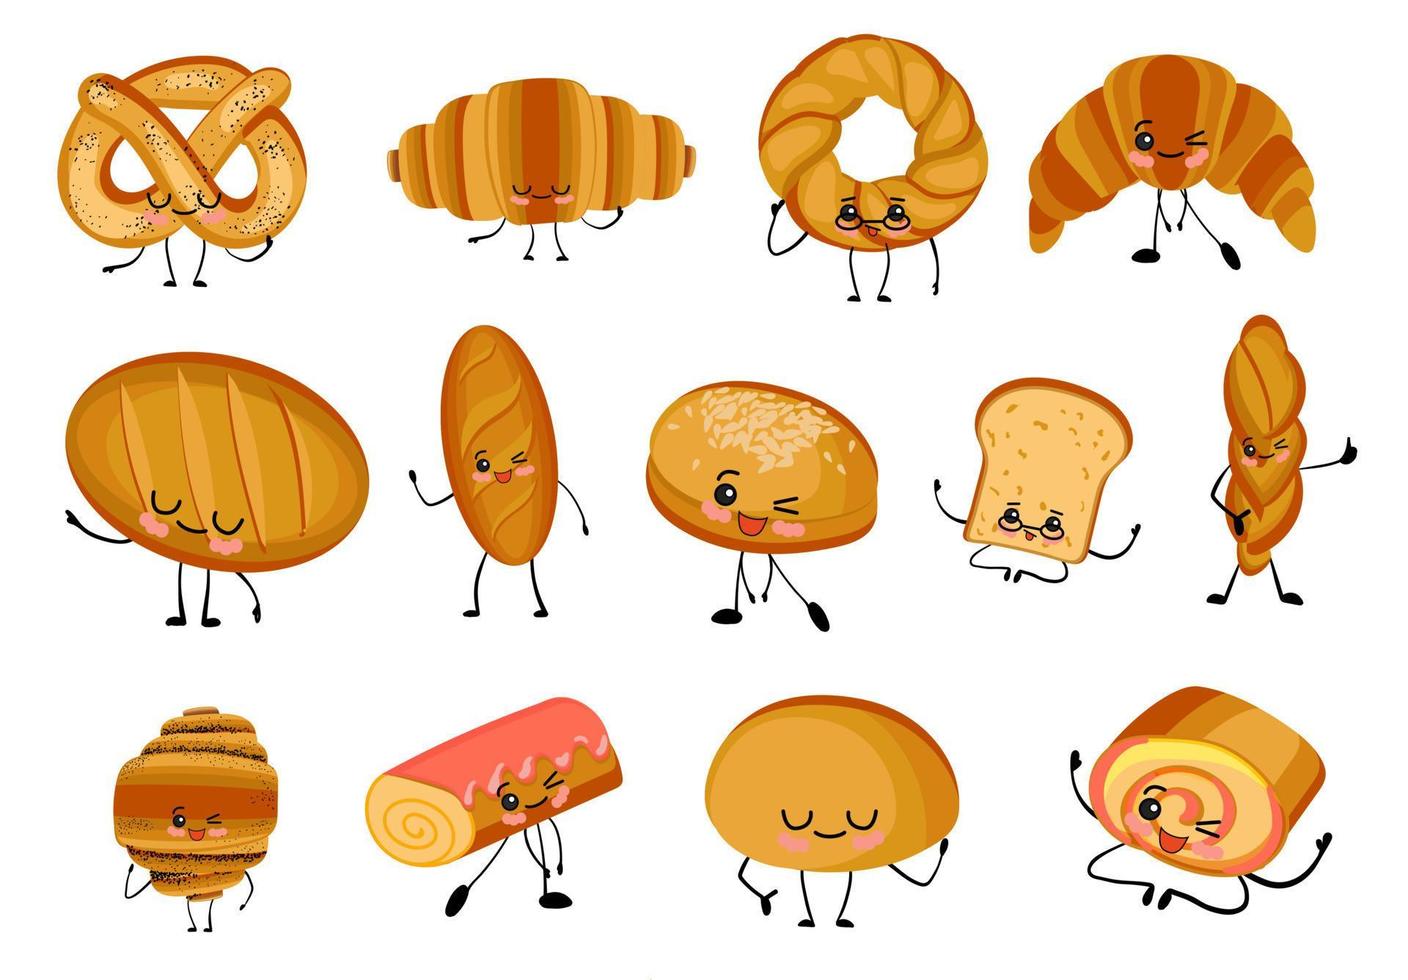 große reihe von isolierten illustrationen auf weißem hintergrund. Das Brot ist anders. Baguette, Laib, Sandwichbrötchen, Muffins und Brötchen. Weizen- und Roggenbrotprodukte. süße Charaktere.. vektor